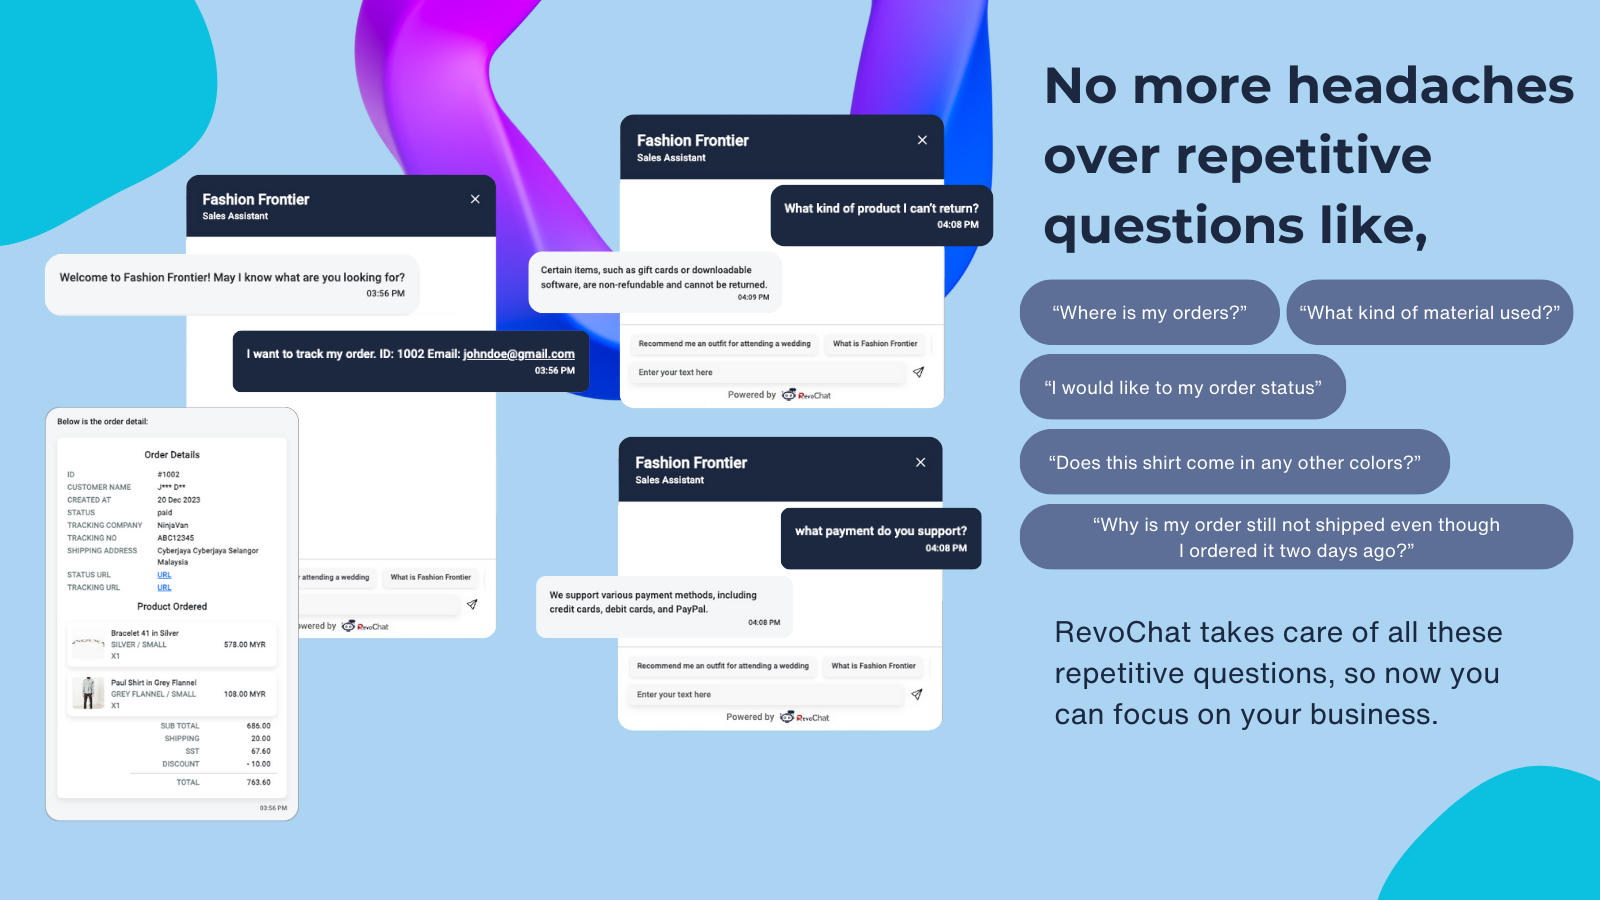 RevoChat löser alla dina repetitiva och huvudvärksfrågor